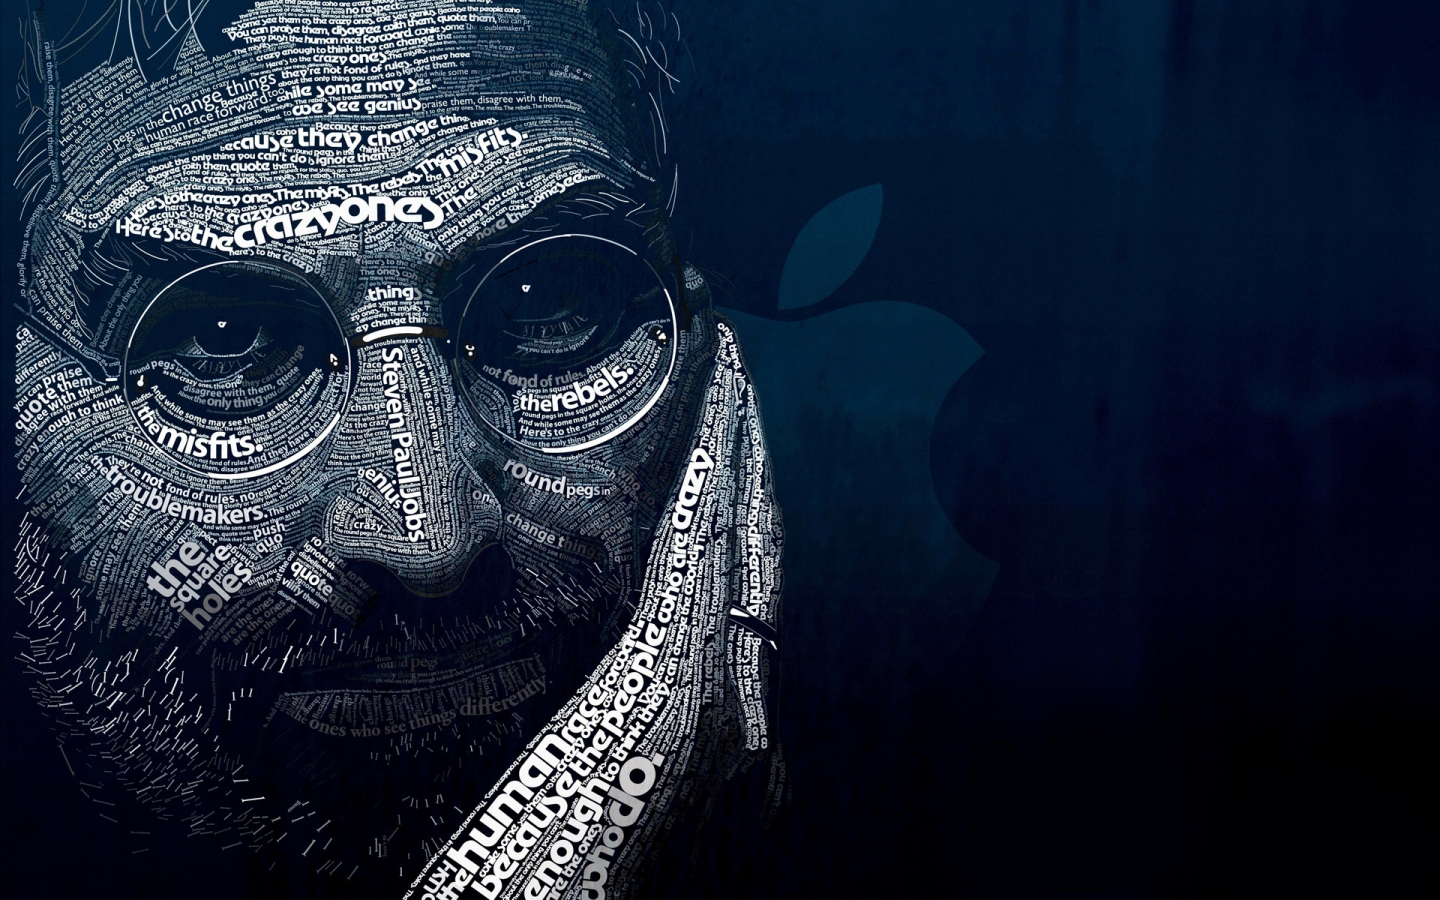 Steve Jobs Word Art for 1440 x 900 widescreen resolution